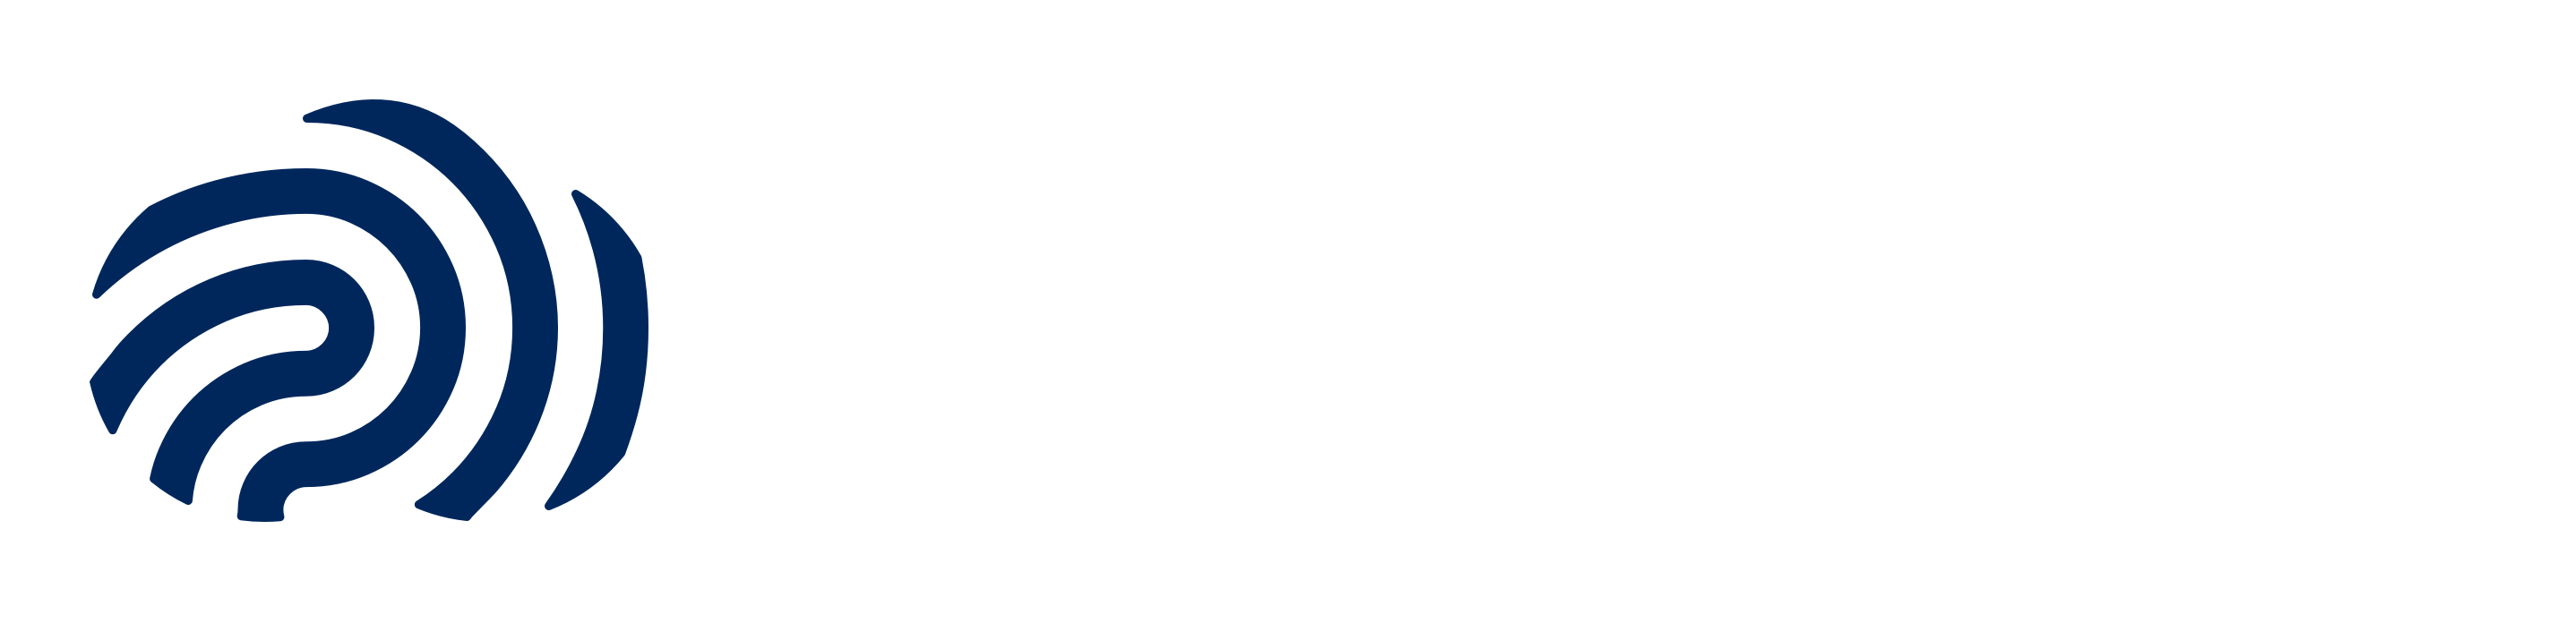 Cloud-ID-2022-white-dkblue-2